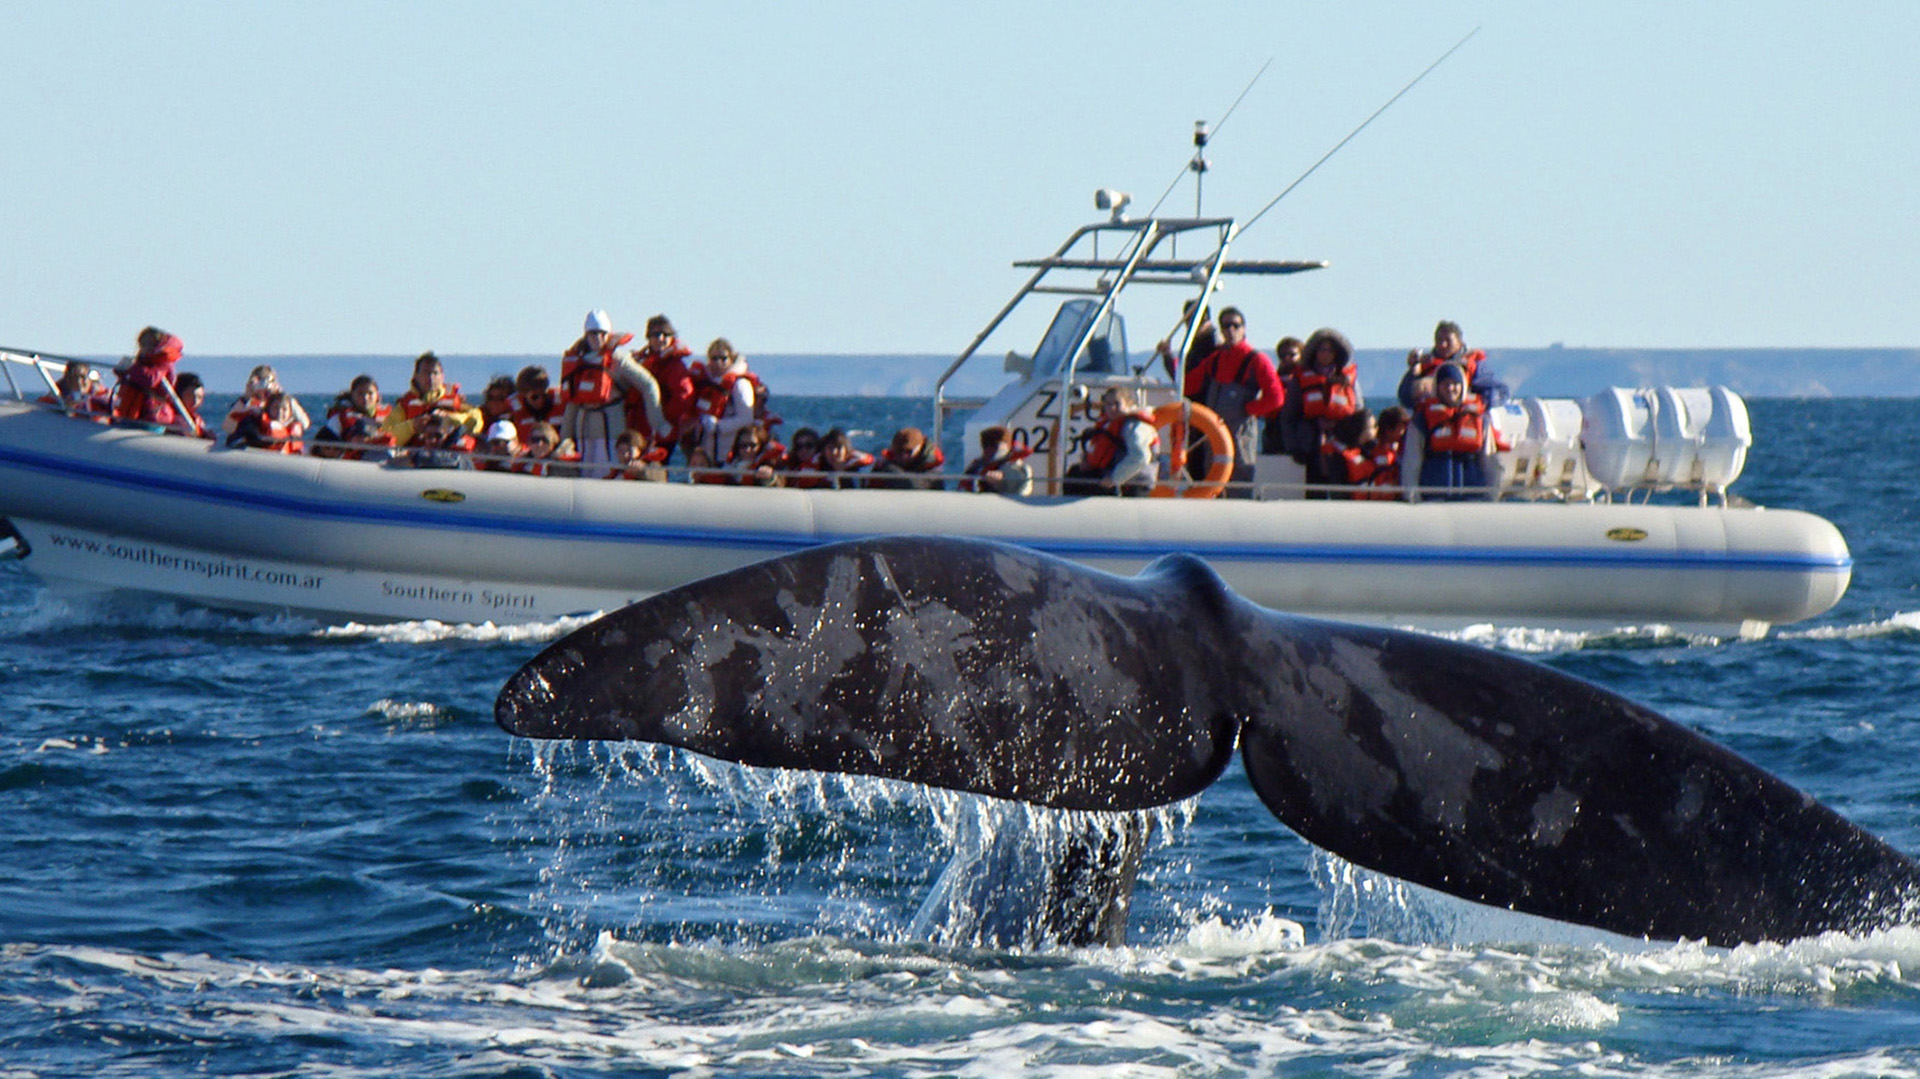 Avistaje para pocos: Ver las ballenas en Chubut costará $ 125.000 a partir de septiembre